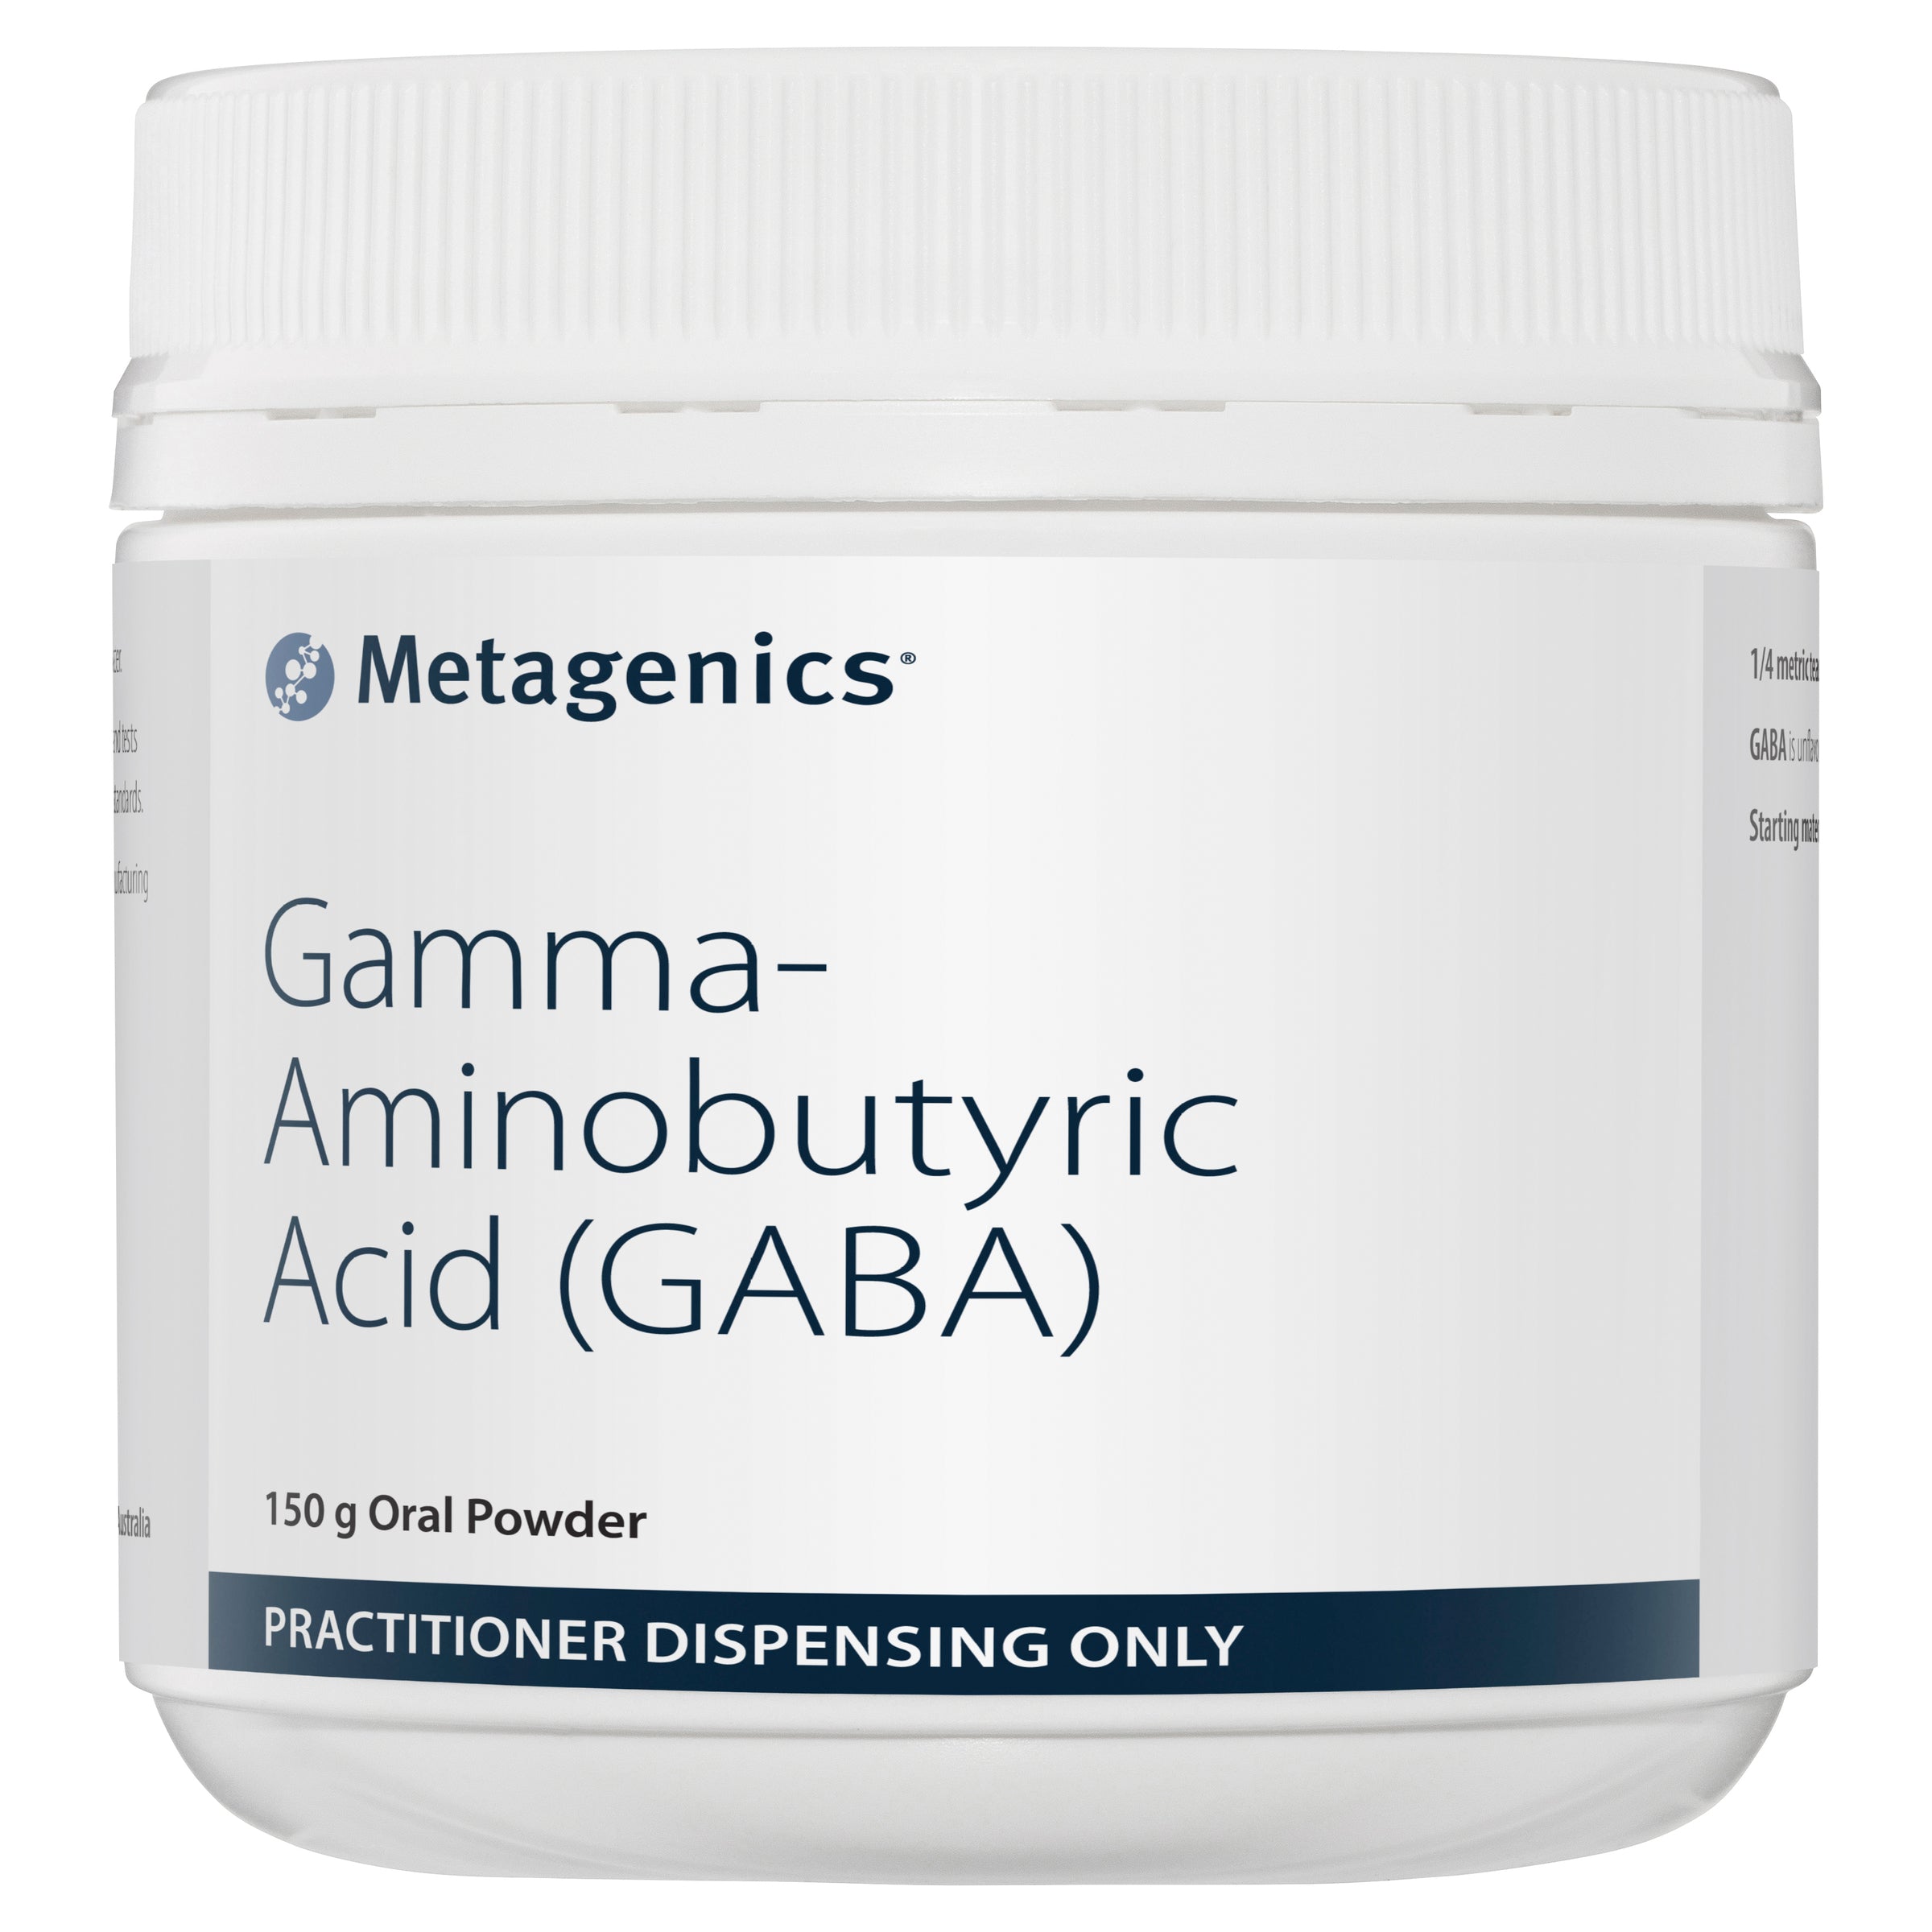 Metagenics Gamma-Aminobutyric Acid (GABA) Oral Powder 150 g